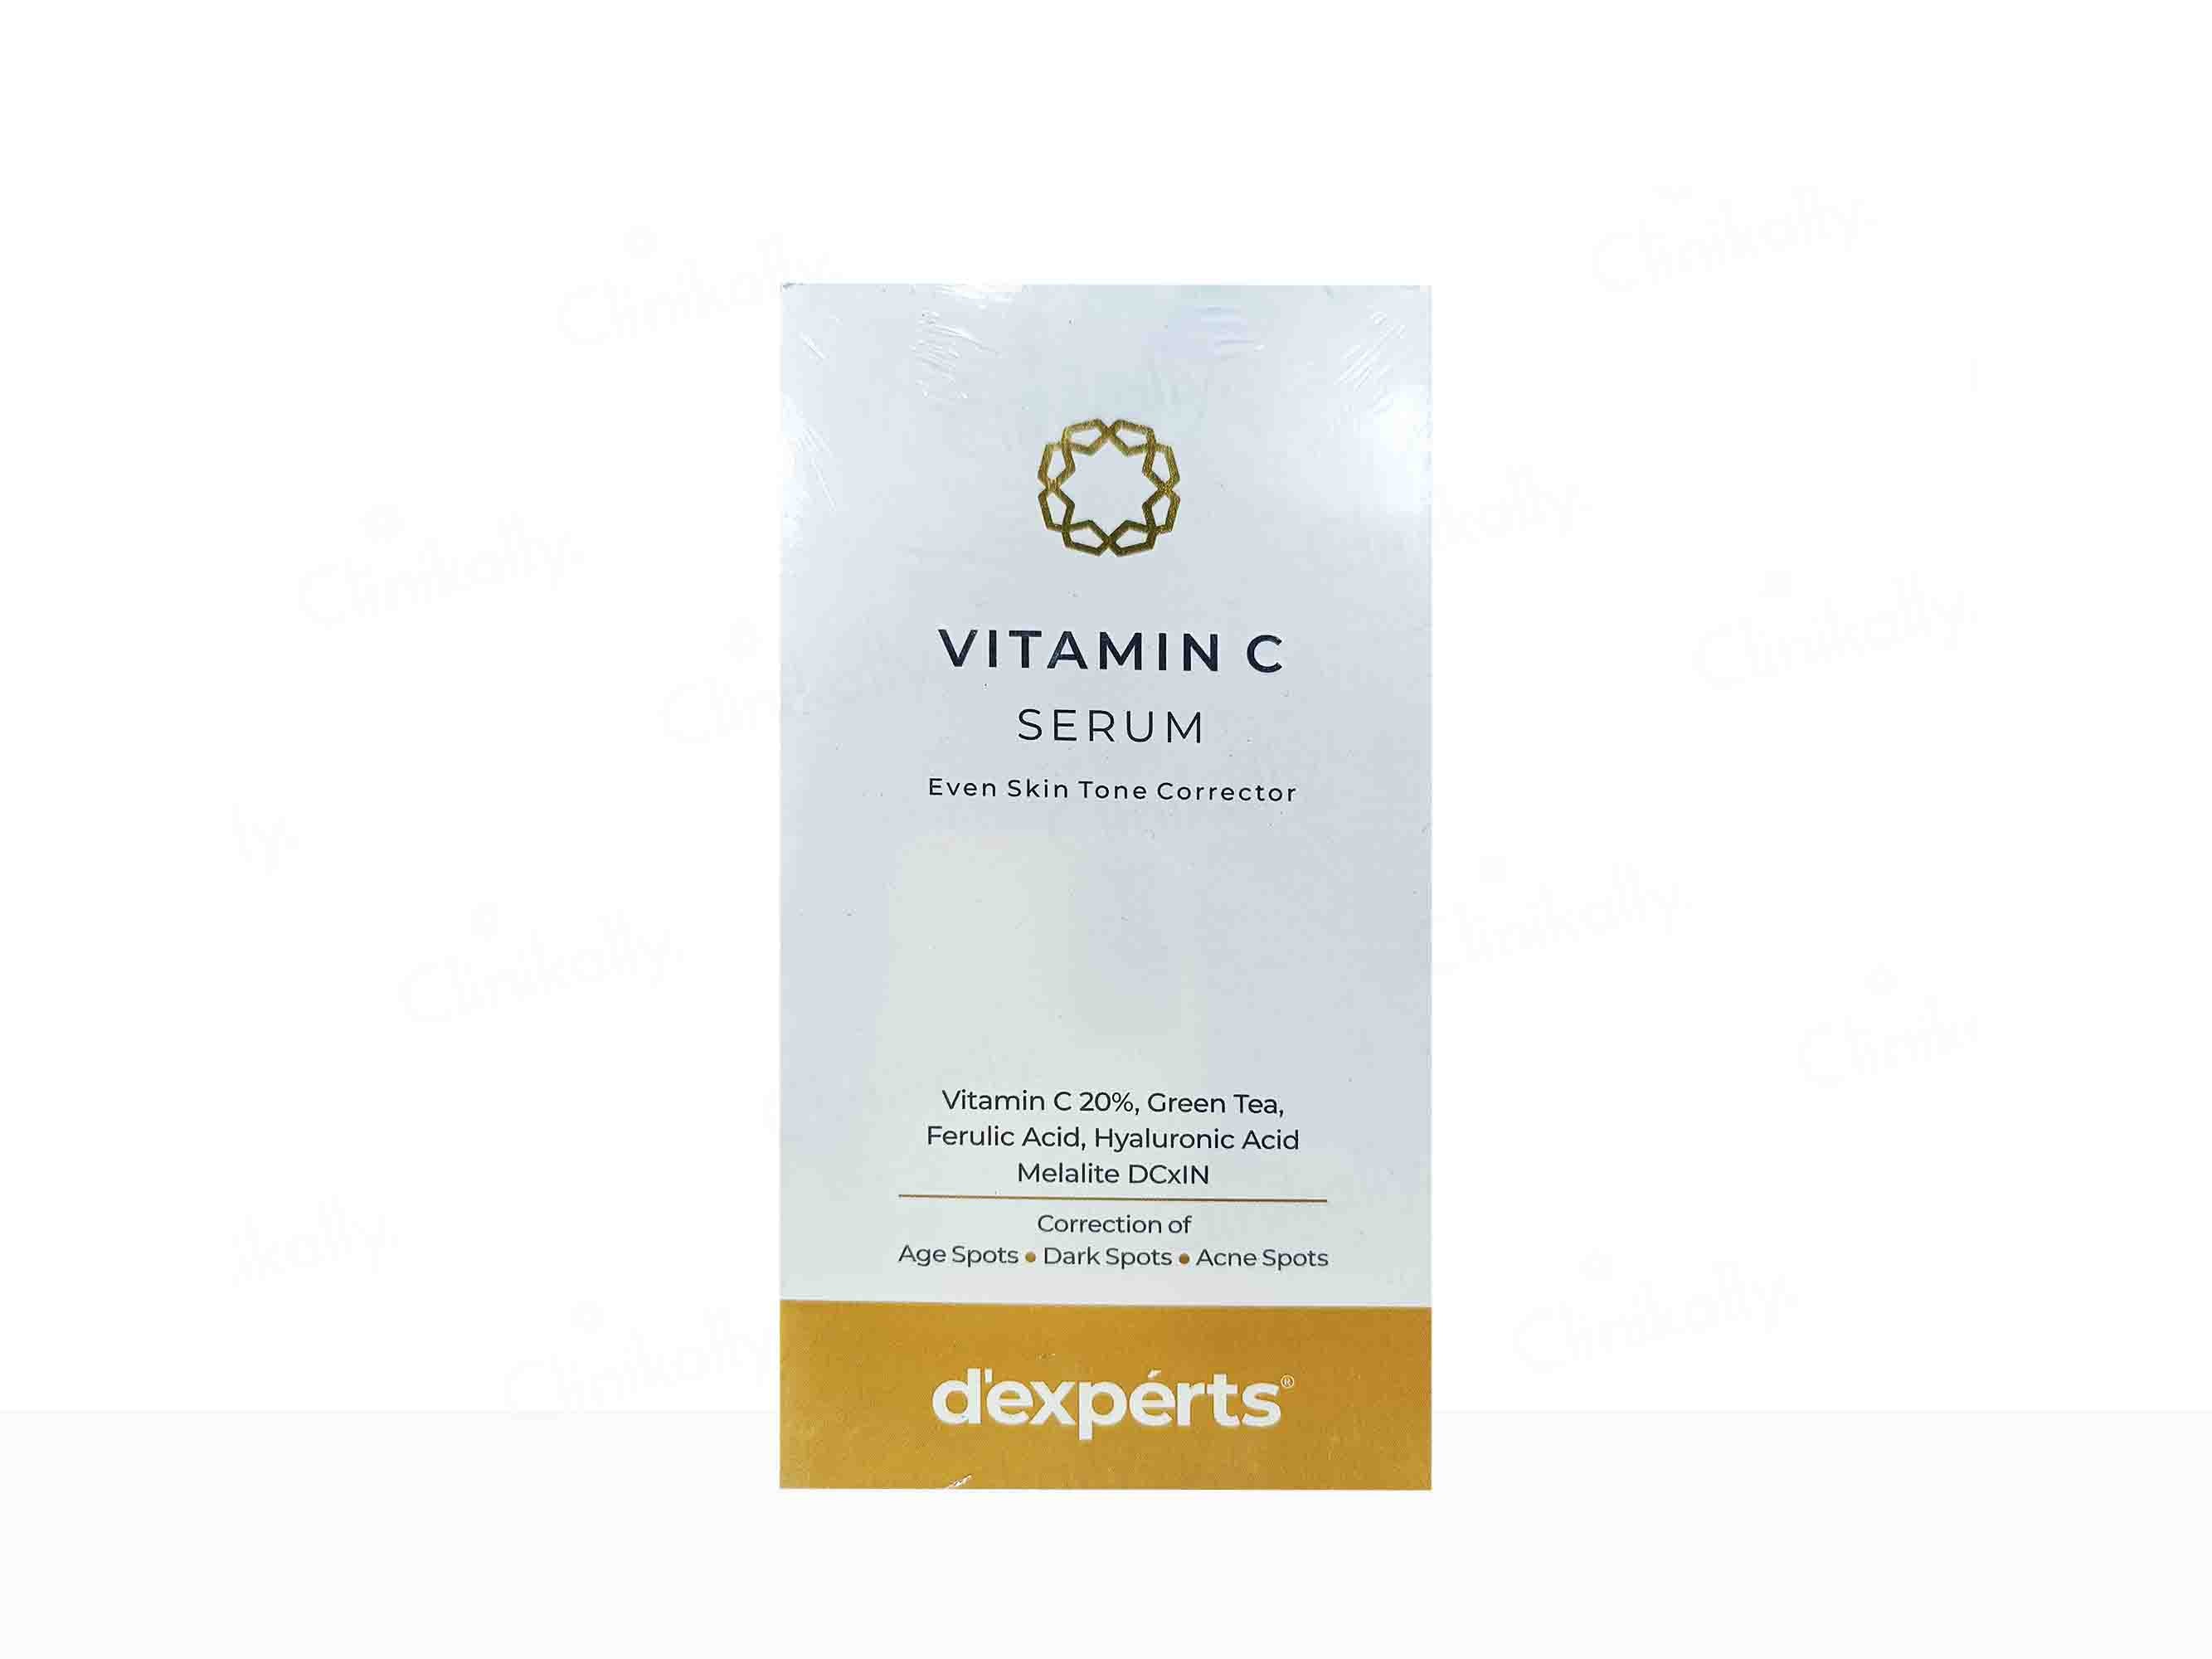 Brinton D'experts Vitamin C Serum